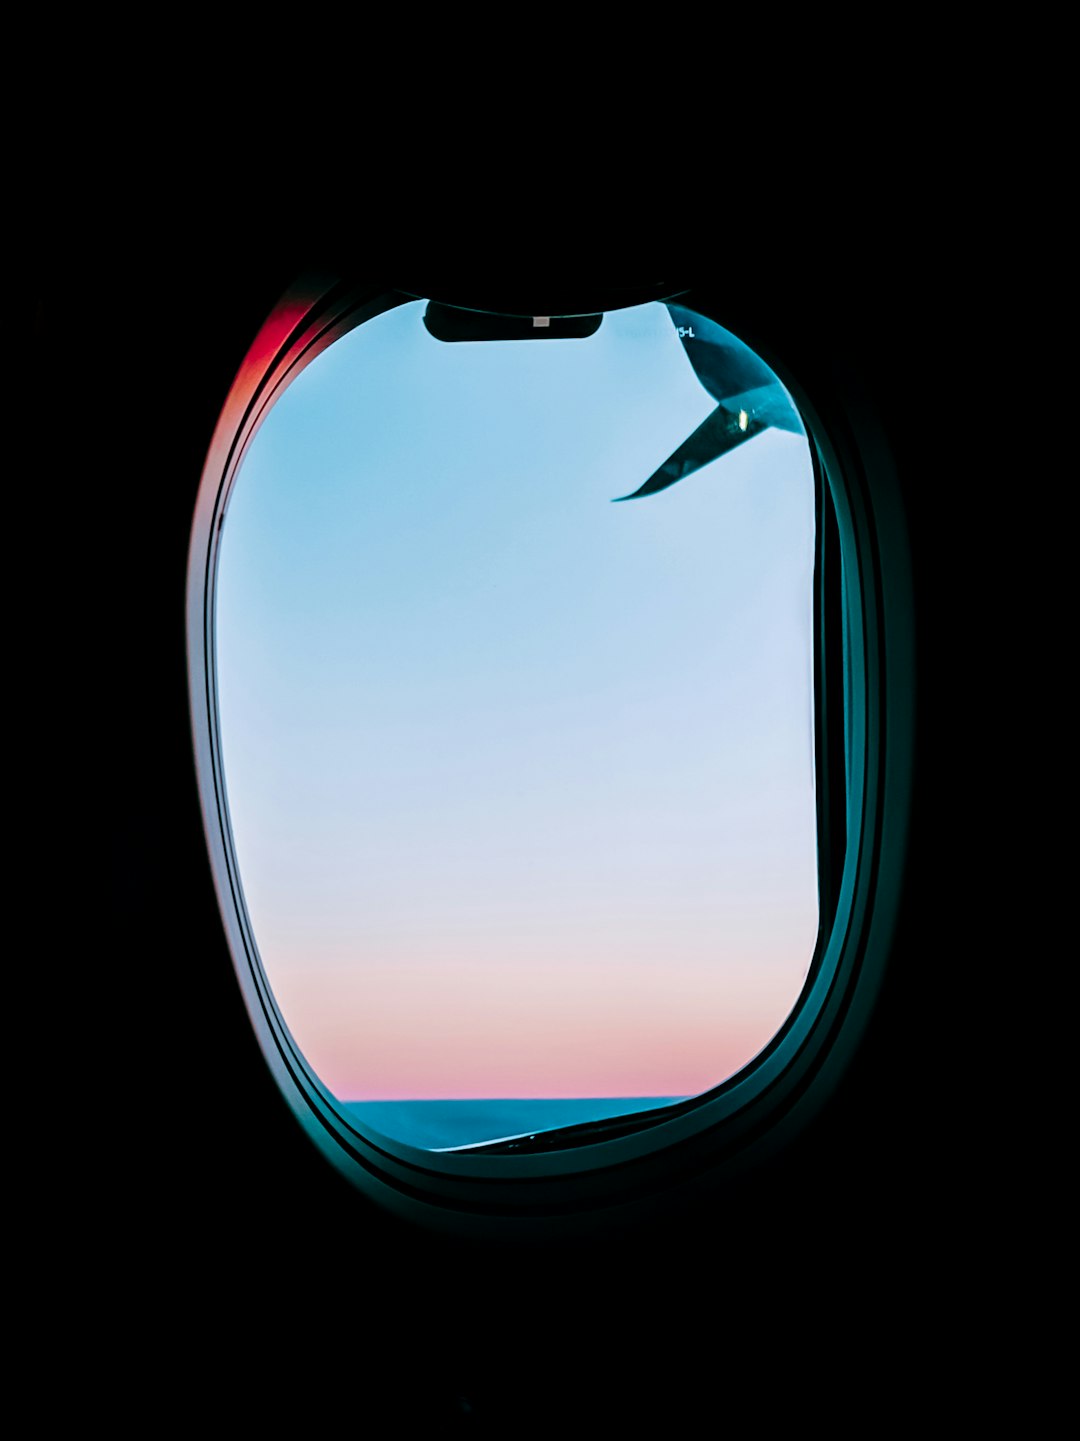 clear plane window